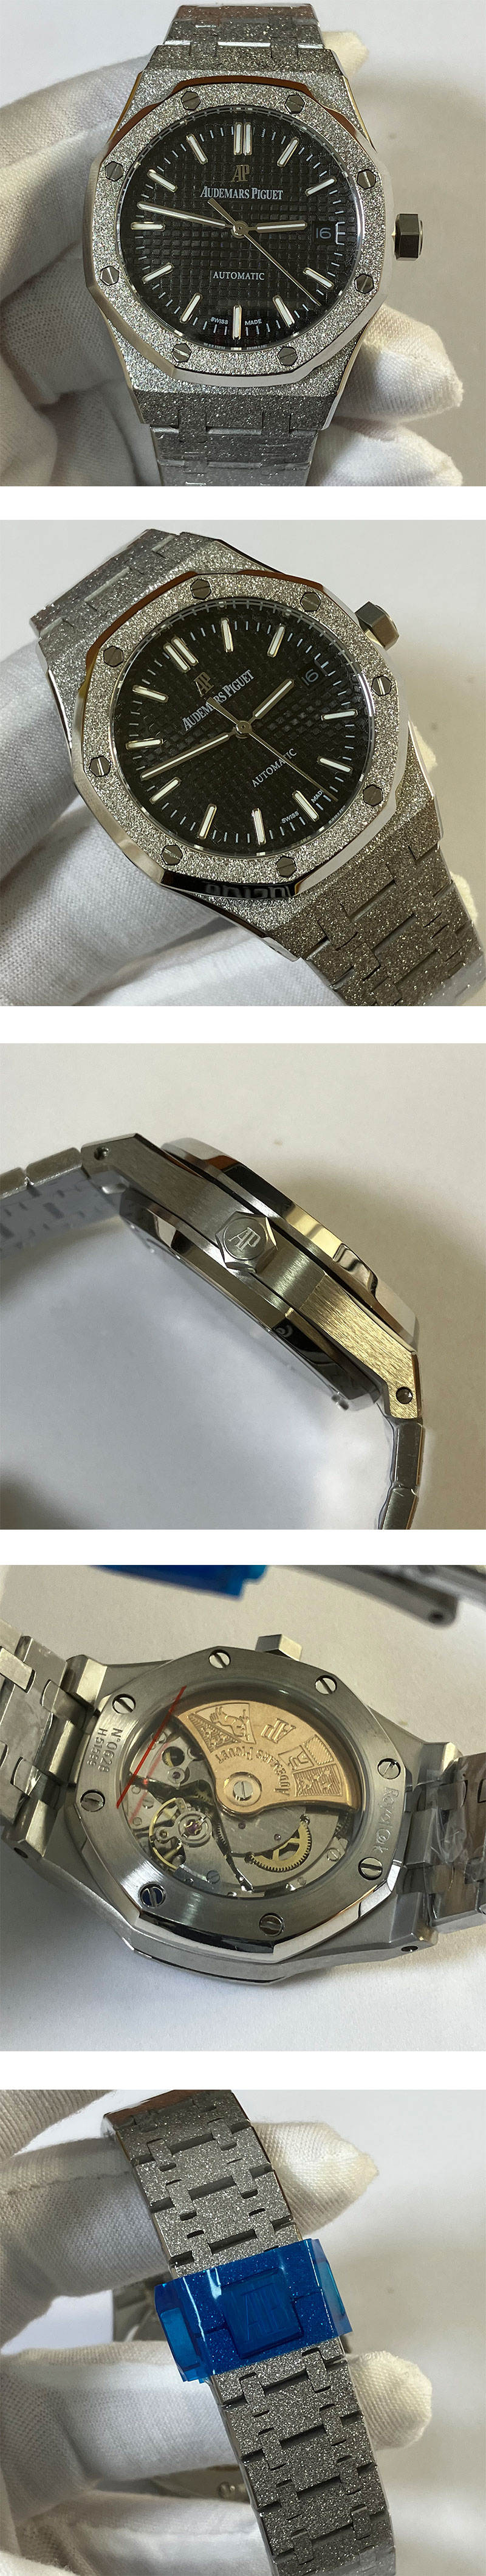 オーデマピゲスーパーコピー時計 15410 ロイヤルオーク フロステッドゴールド 41mm ブラック